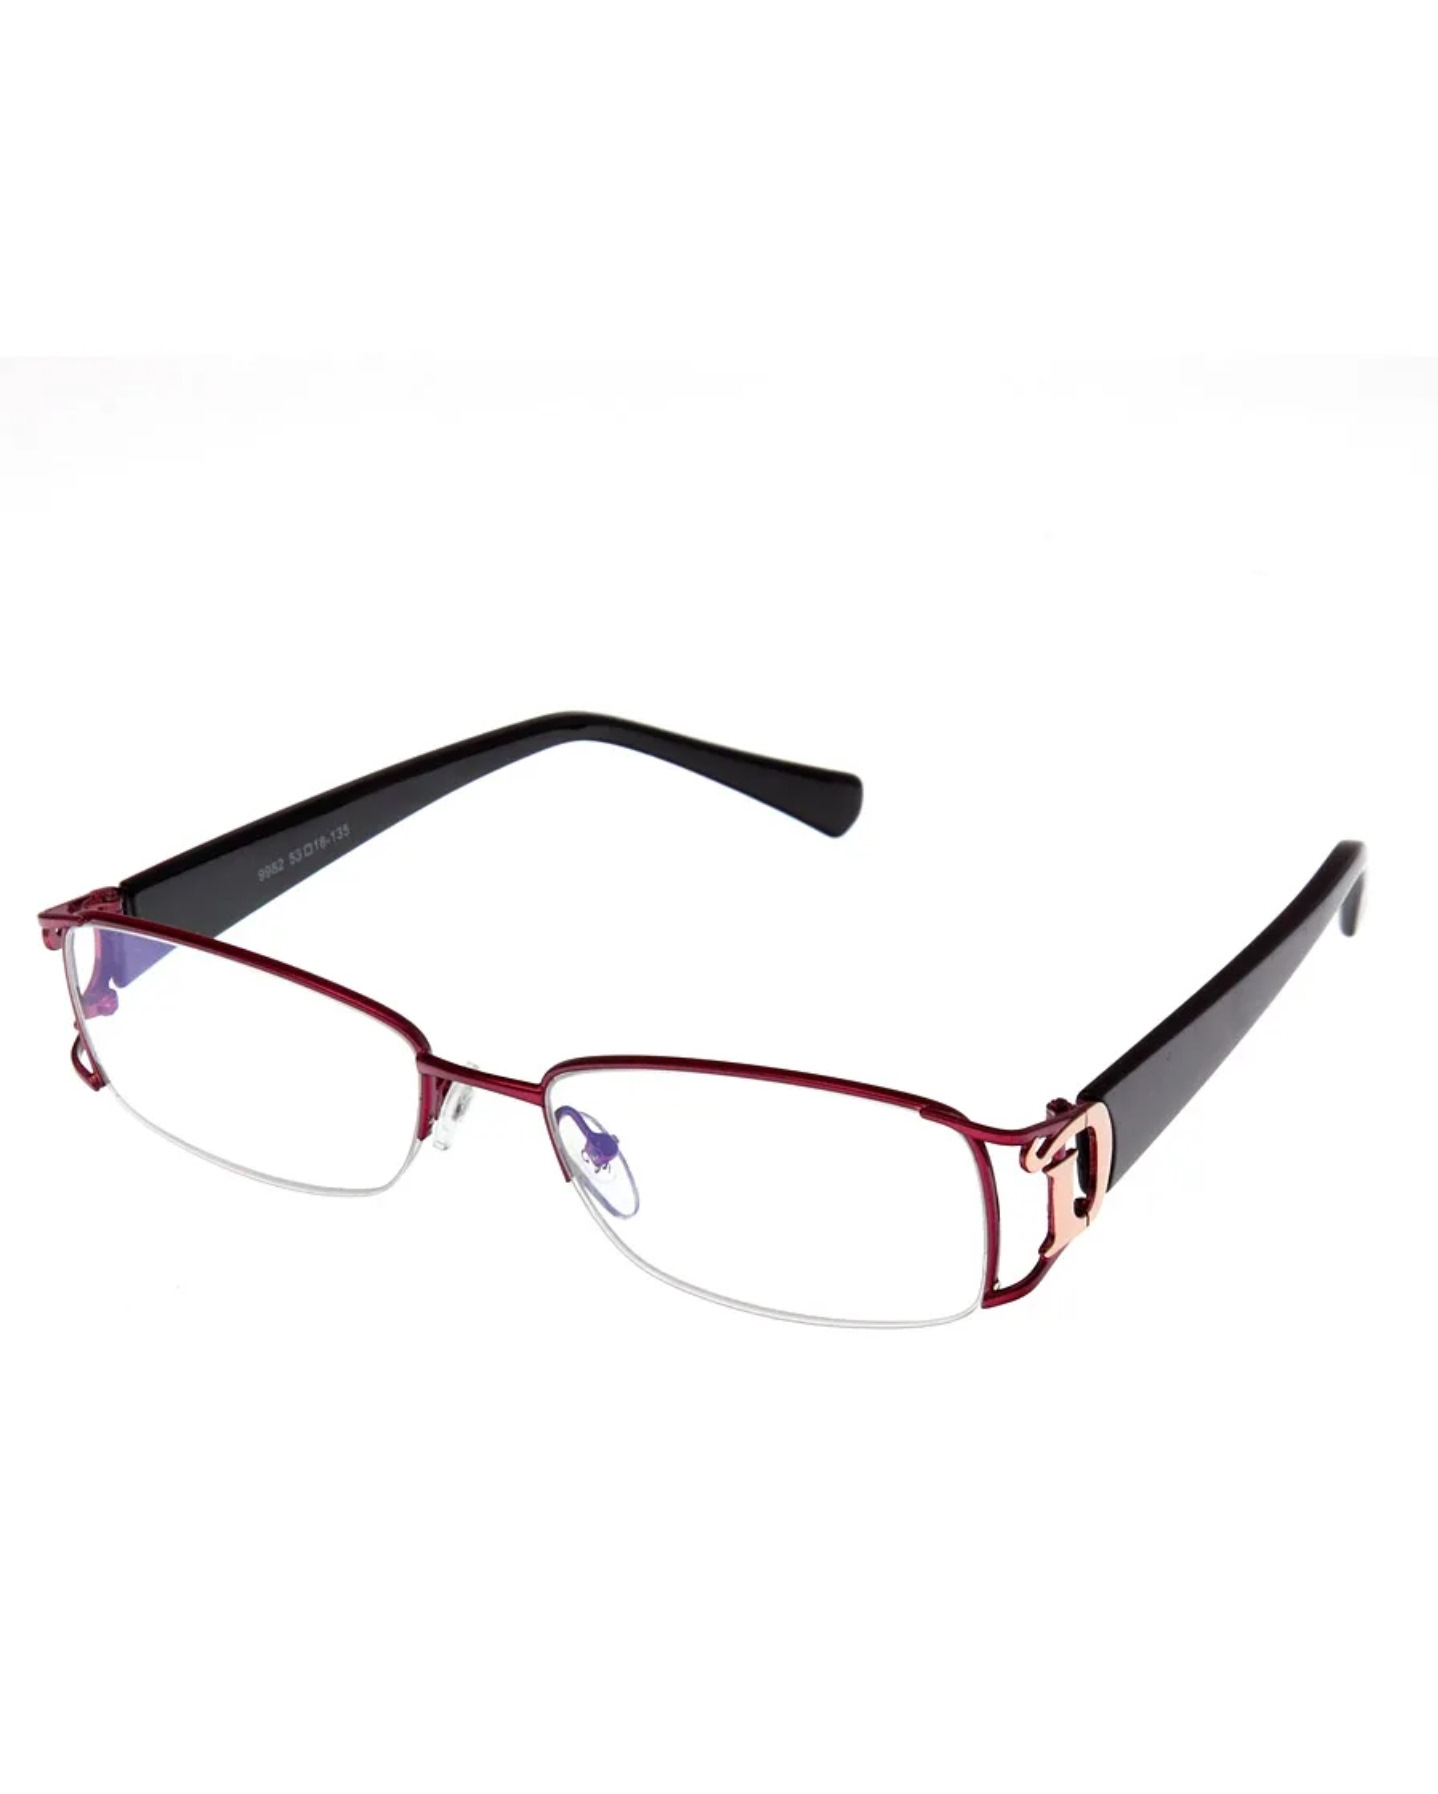 Купить очки женские на озон. Узкие очки для зрения. Оправа для очков. Красивые оправы для очков. Очки для чтения.